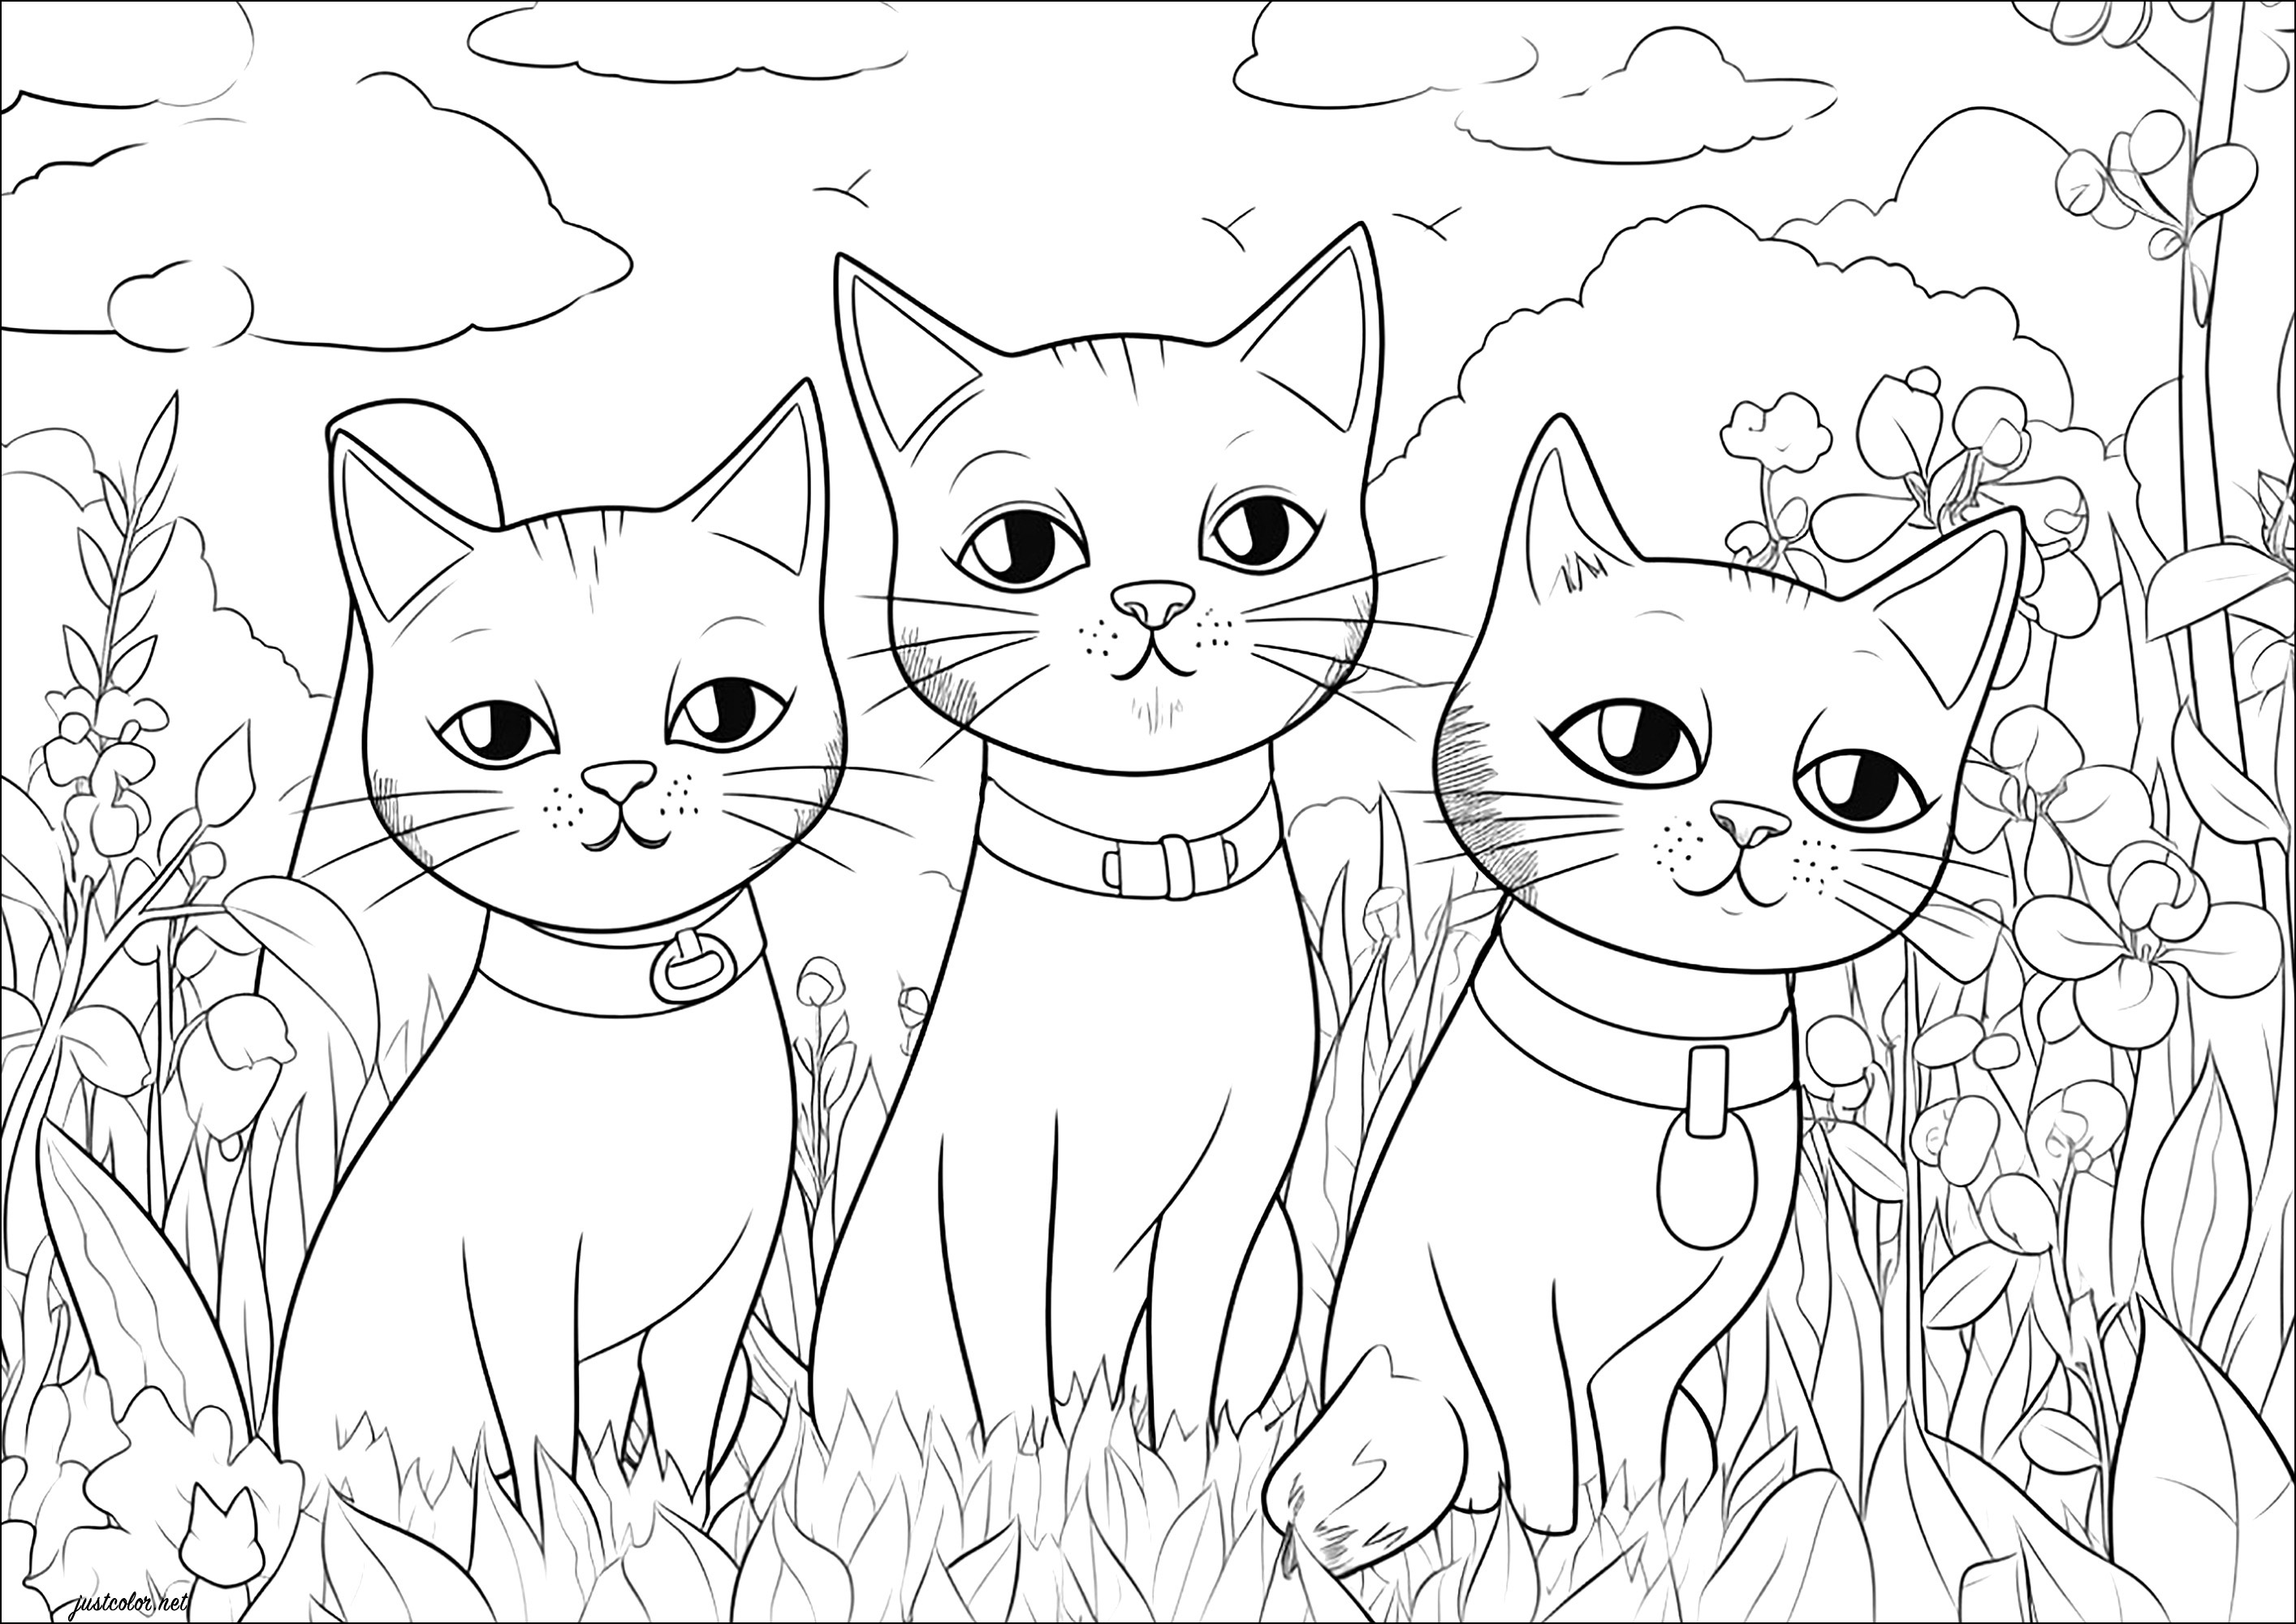 Tres gatos mirándote fijamente. Tres bonitos gatos con mirada desdeñosa, y muchas plantas para colorear de fondo.